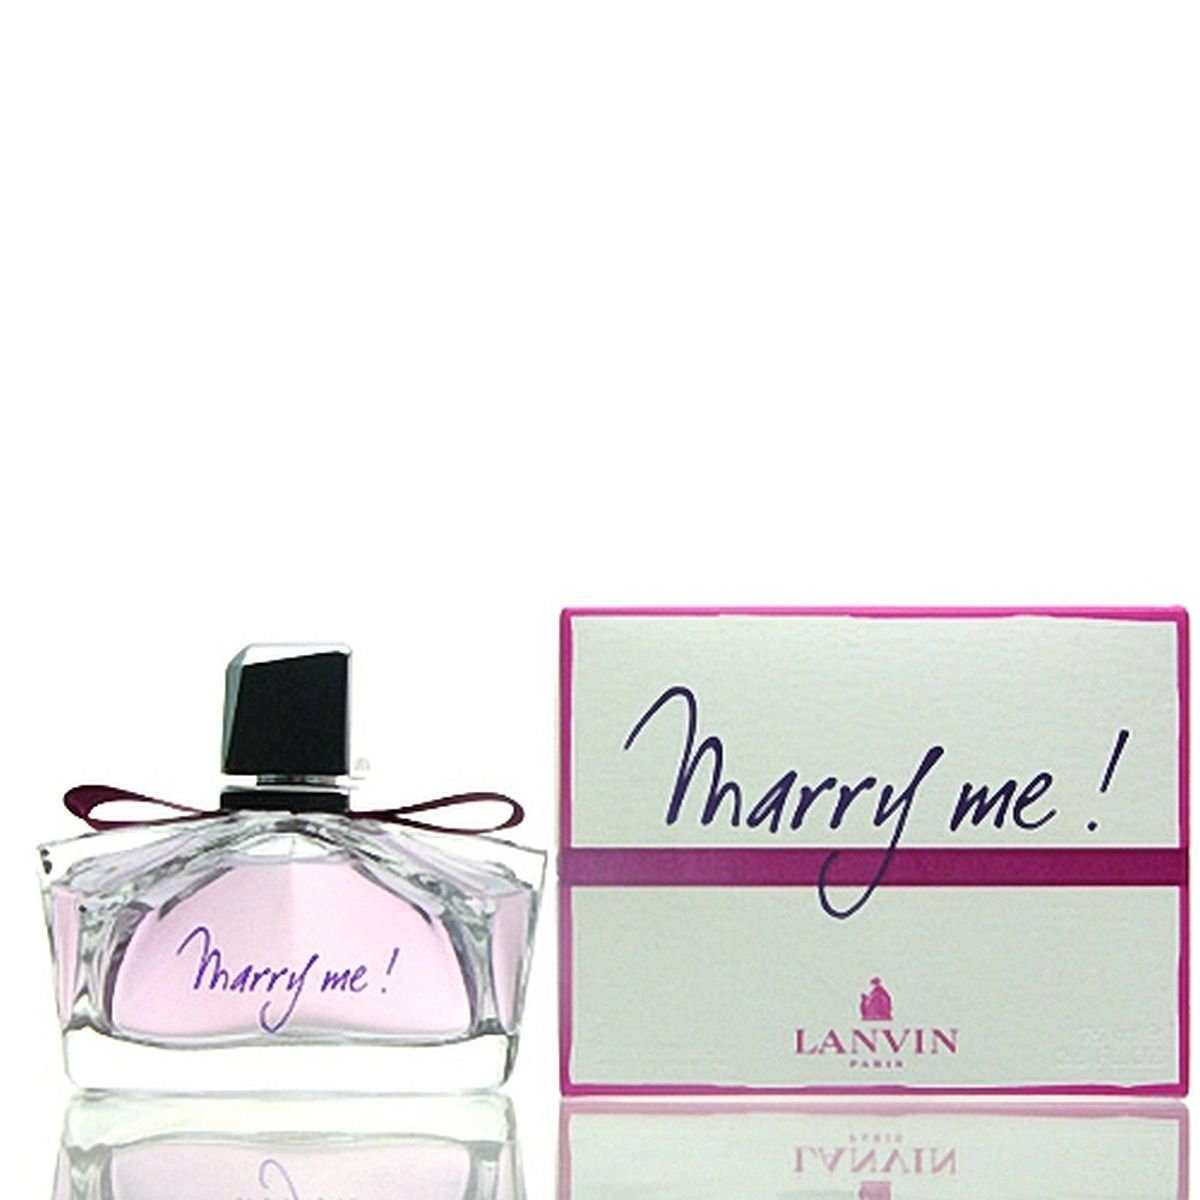 Me! Eau de Parfum Parfum de Lanvin Marry 75 ml LANVIN Eau